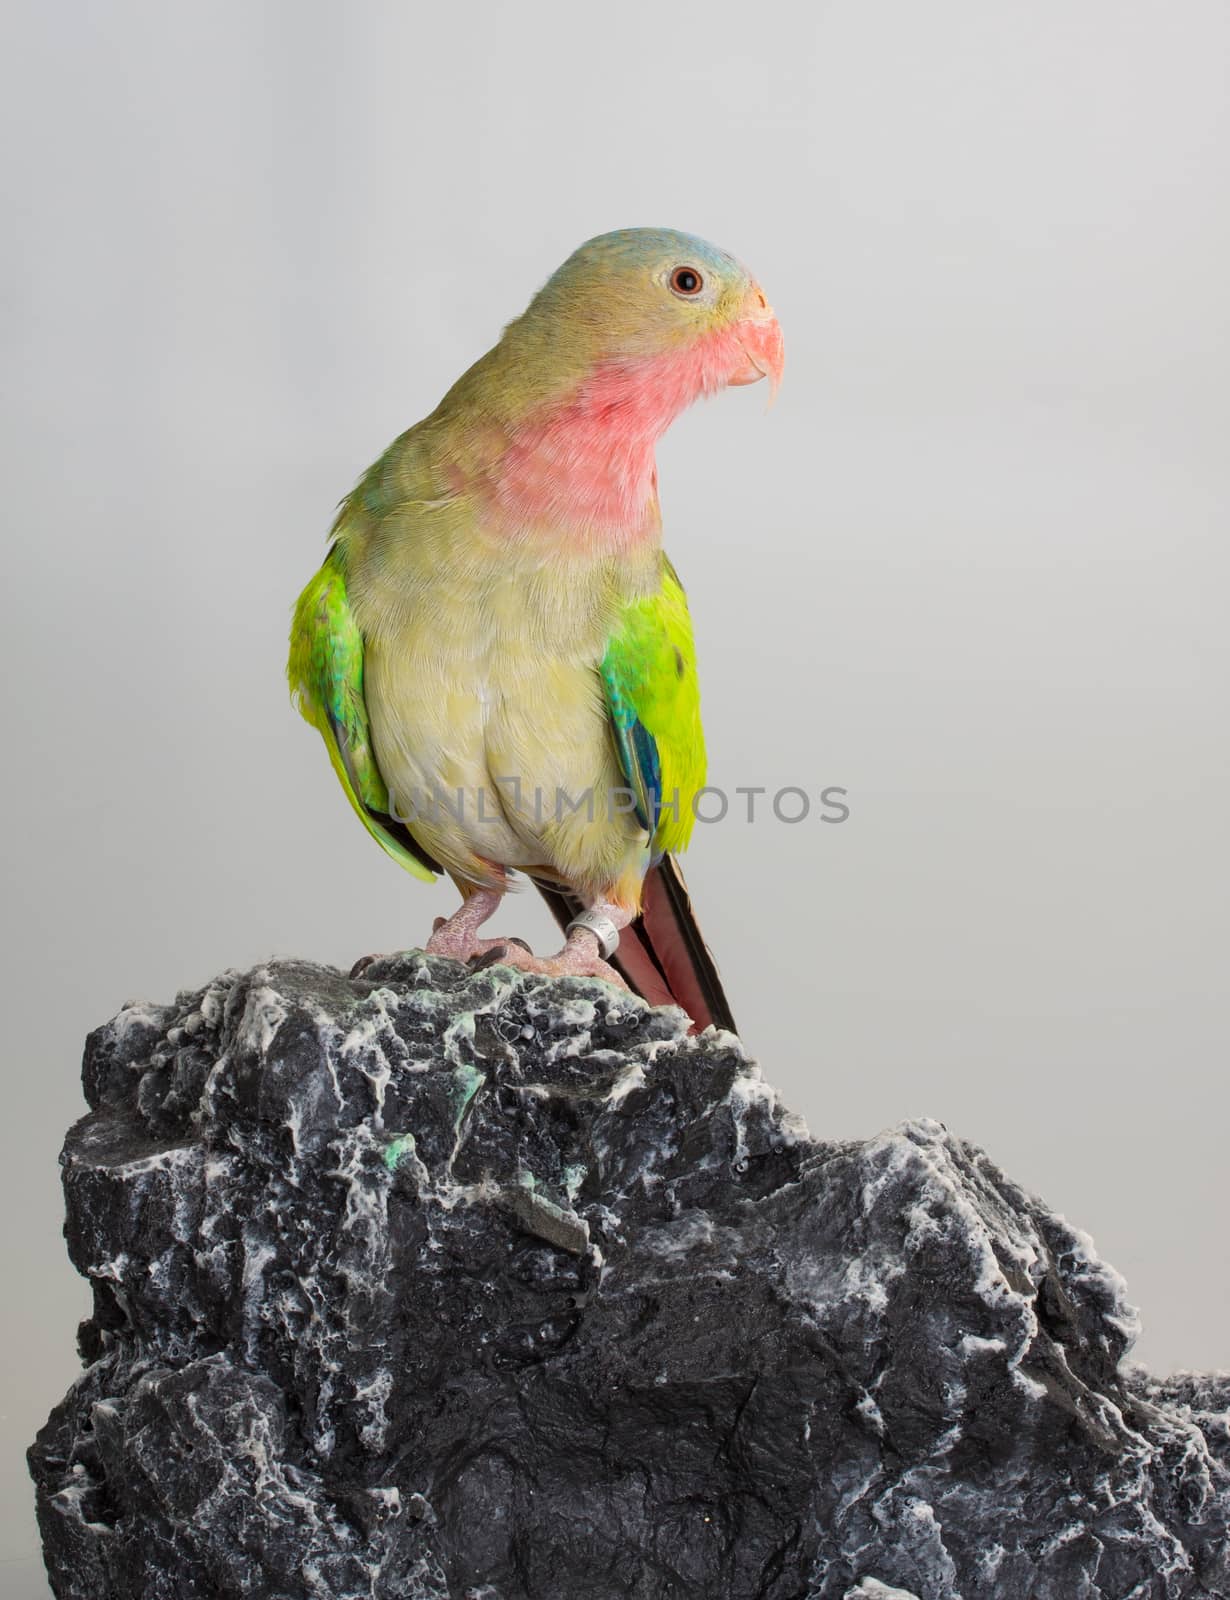 Princess parrot as pet animal by lanalanglois